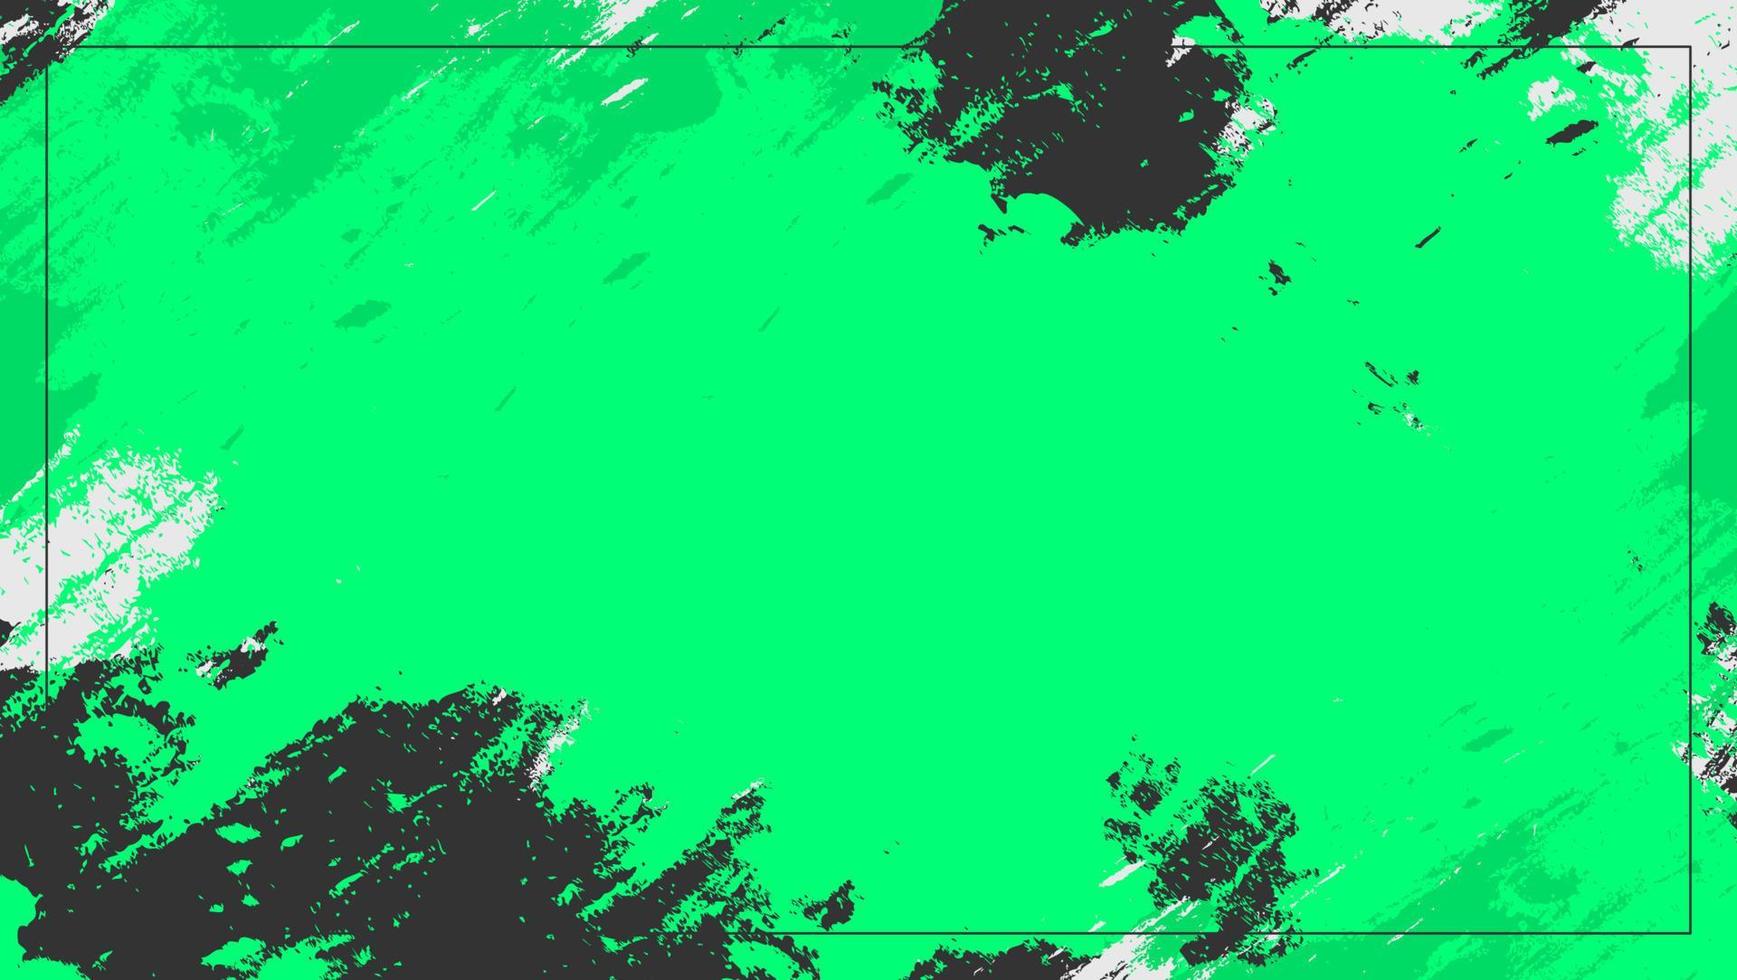 abstrakter bunter grüner schwarzer weißer Schmutzrahmenbeschaffenheitshintergrund vektor